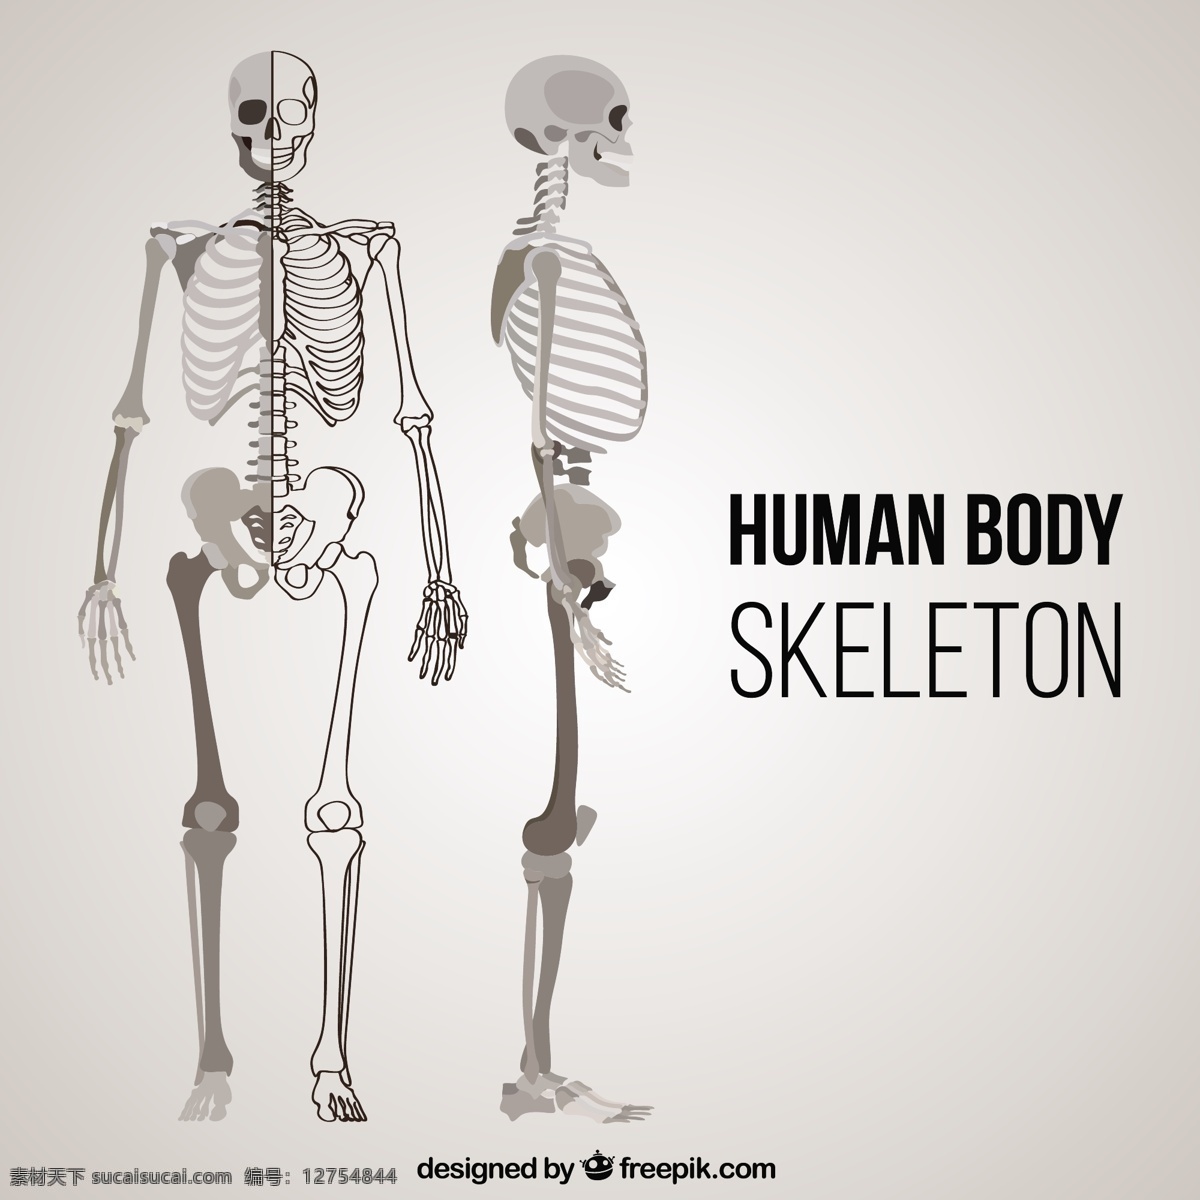 人体 骨骼 不同 位置 一方面 手绘 人力 绘图 骨 人体骨架 系统 绘制草图 部位 骨头 粗略的 现实的 身体 部分 灰色